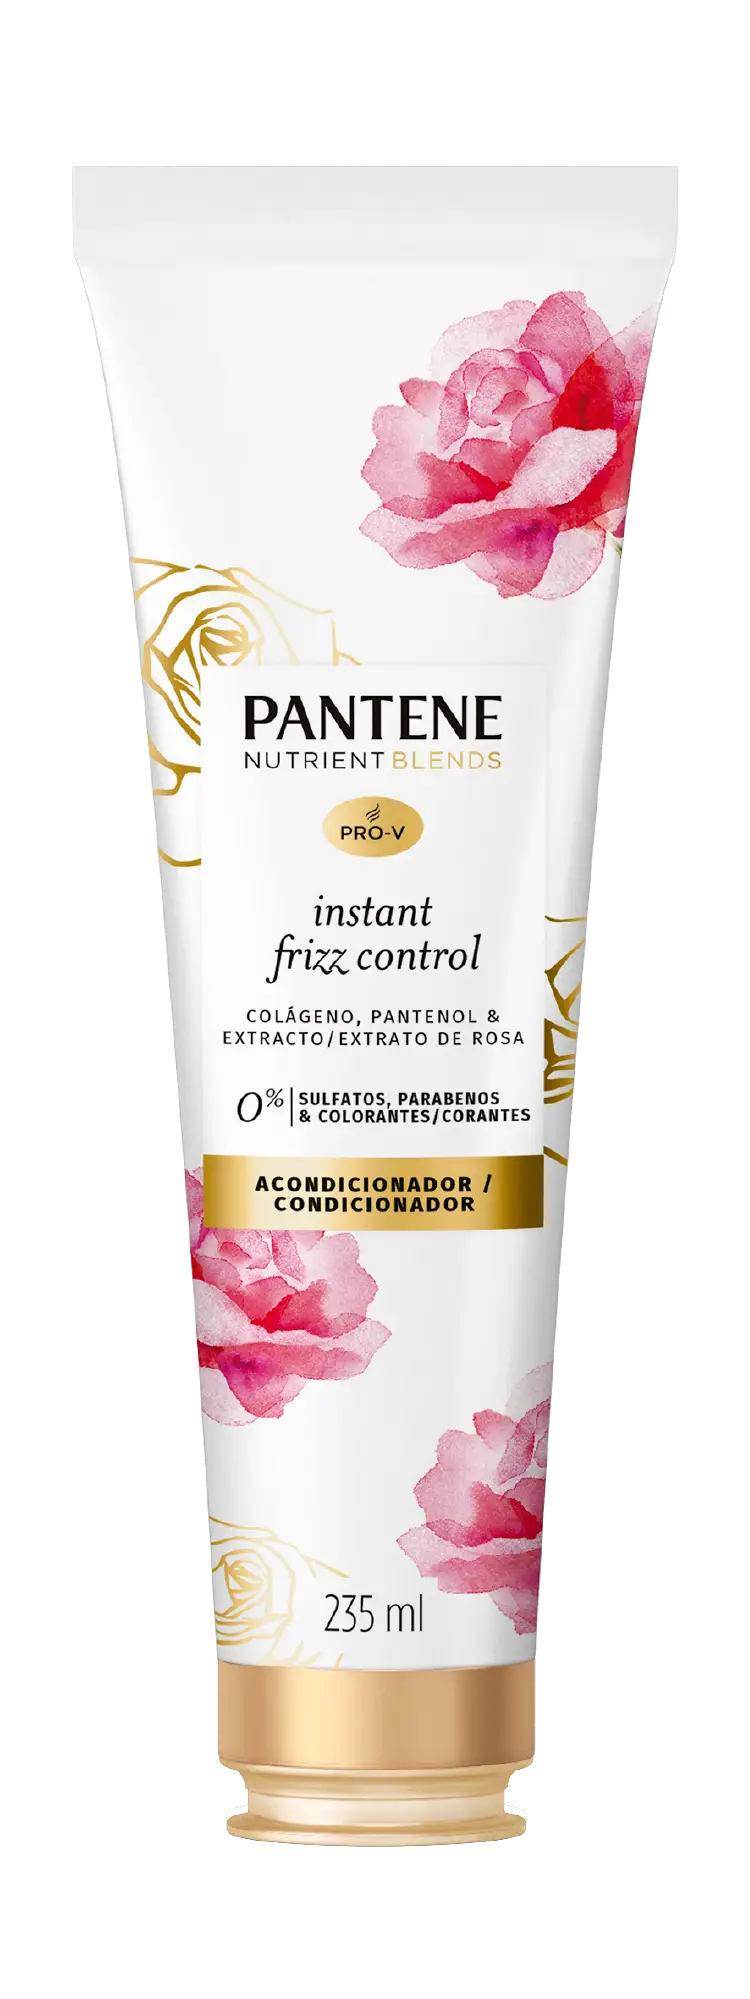 Condicionador Pantene antifrizz com extrato de rosas, colágeno e pantenol, sem sulfatos, sem parabenos e sem corantes